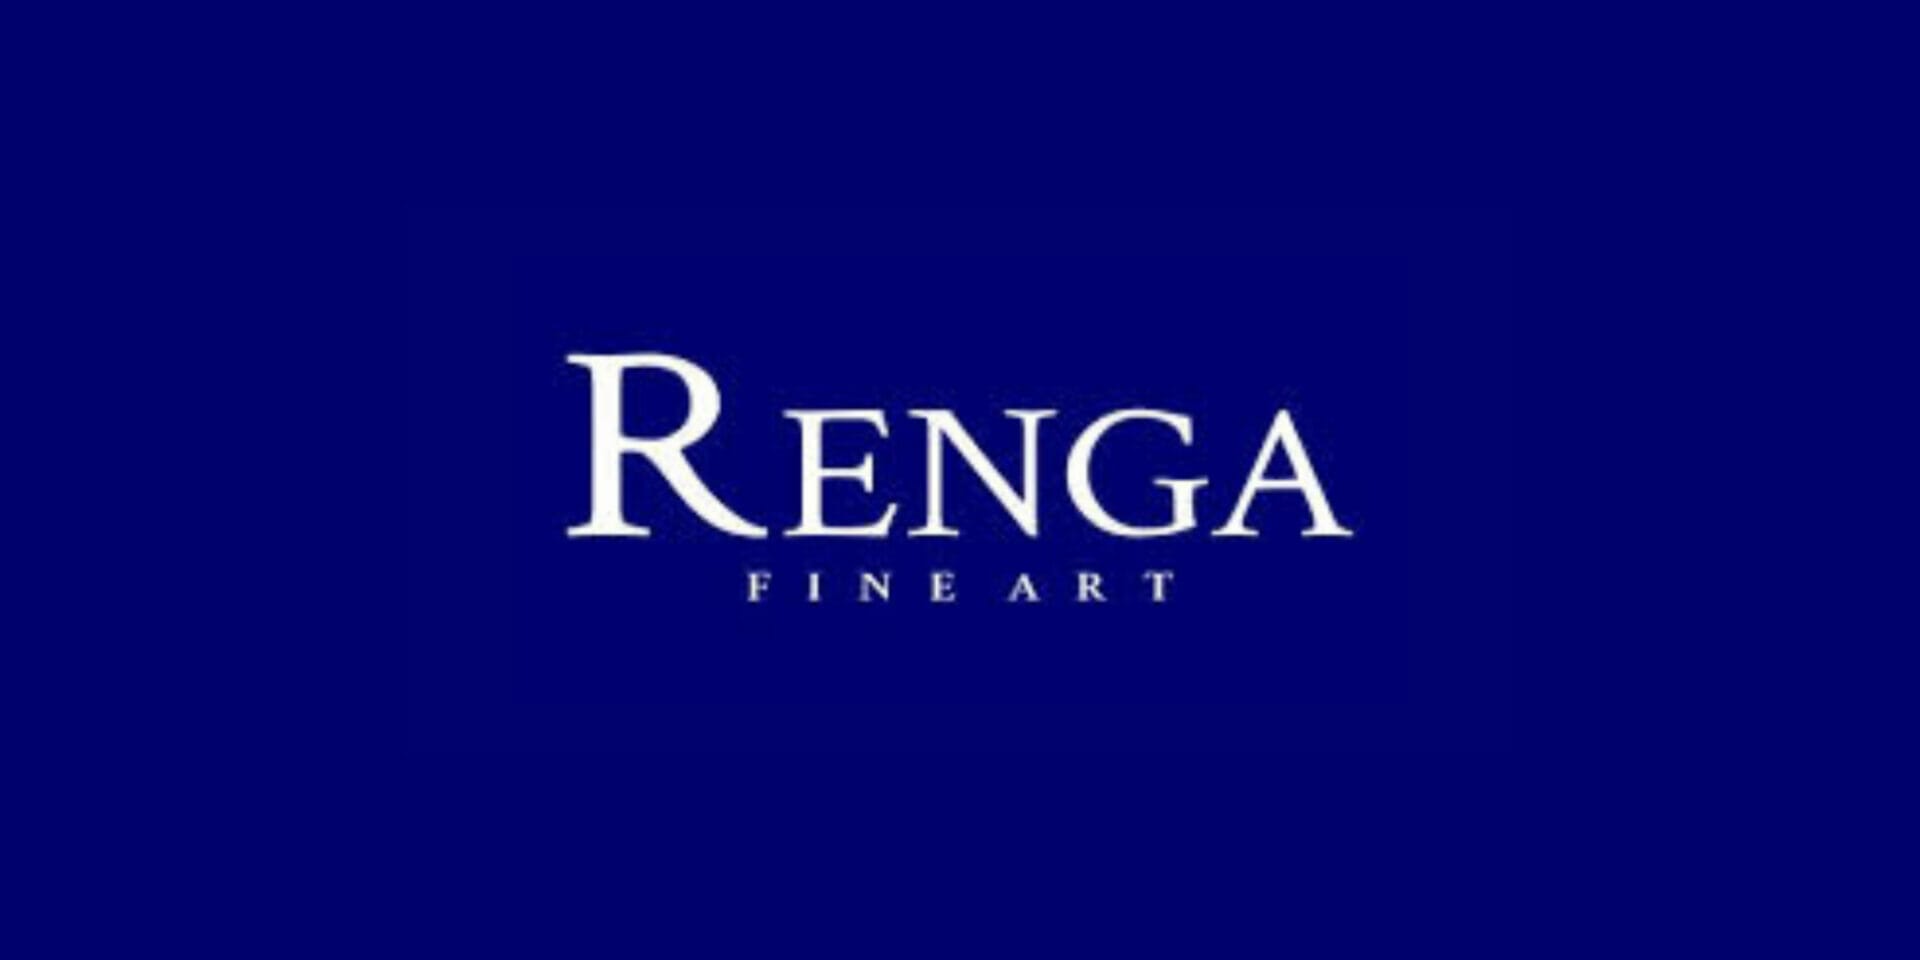 Renga Fine Art Gallery